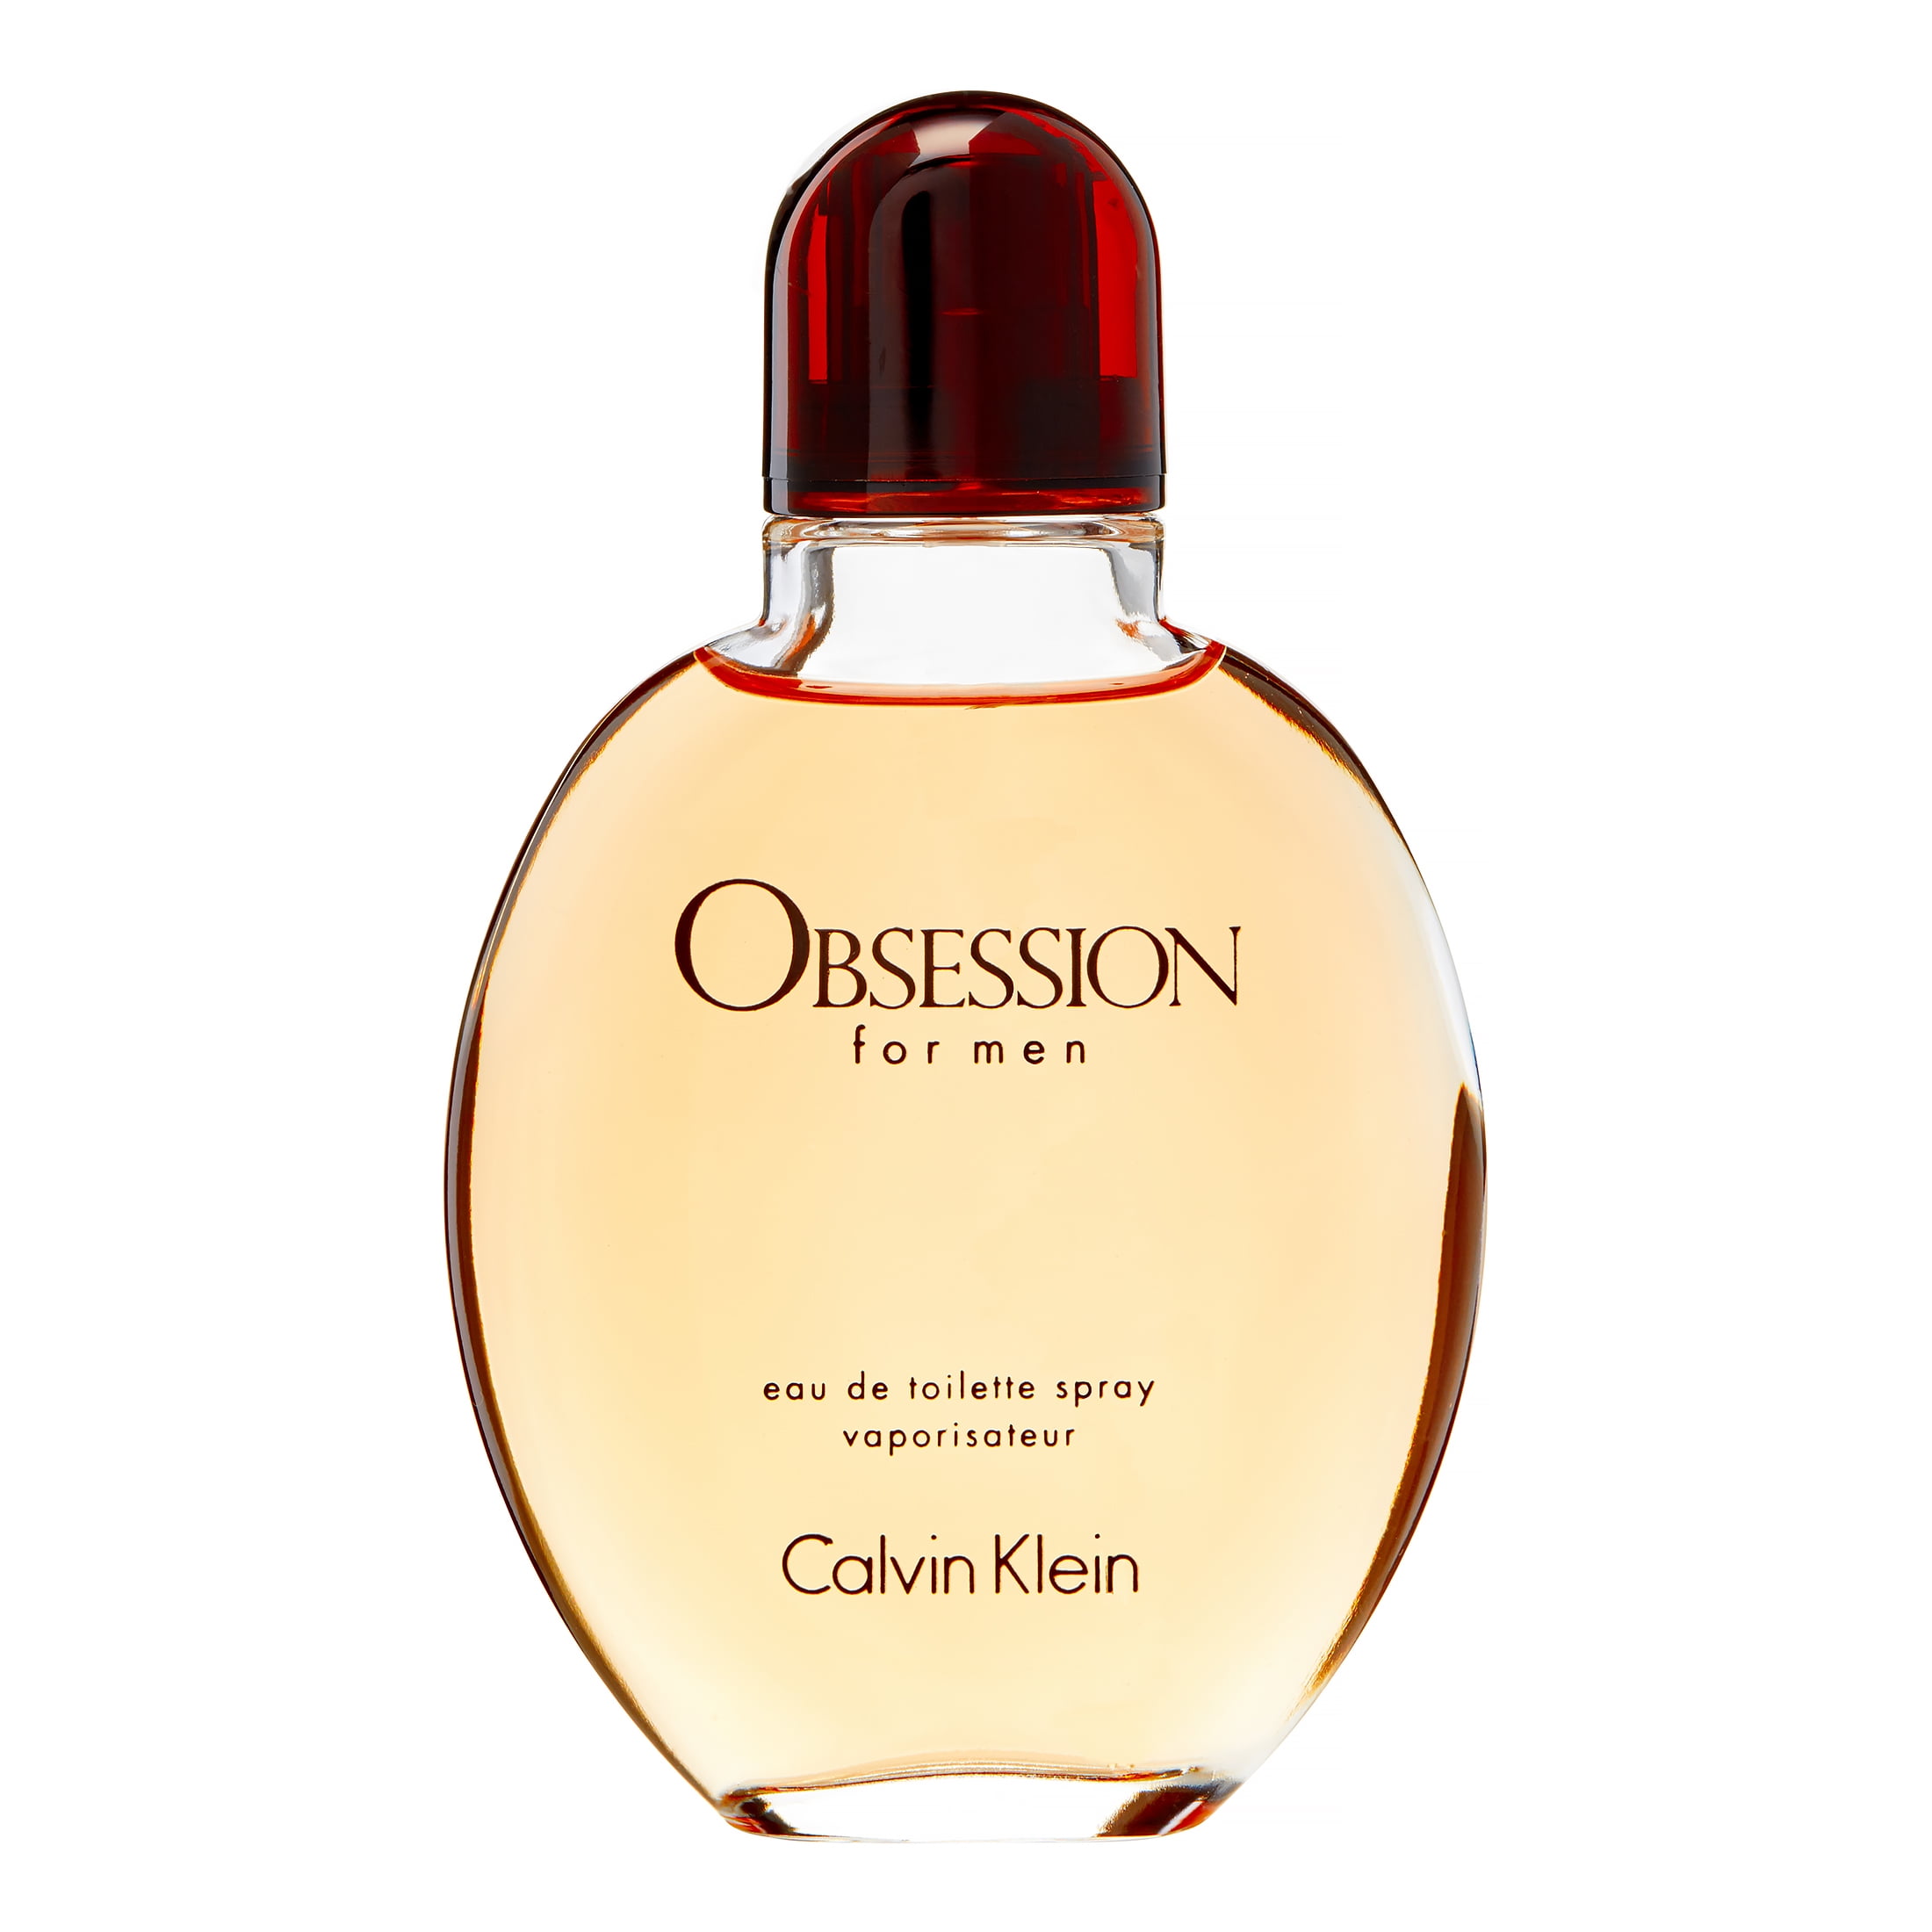 Obsession by Calvin Klein for Men 4.0 oz Eau de Toilette Spray